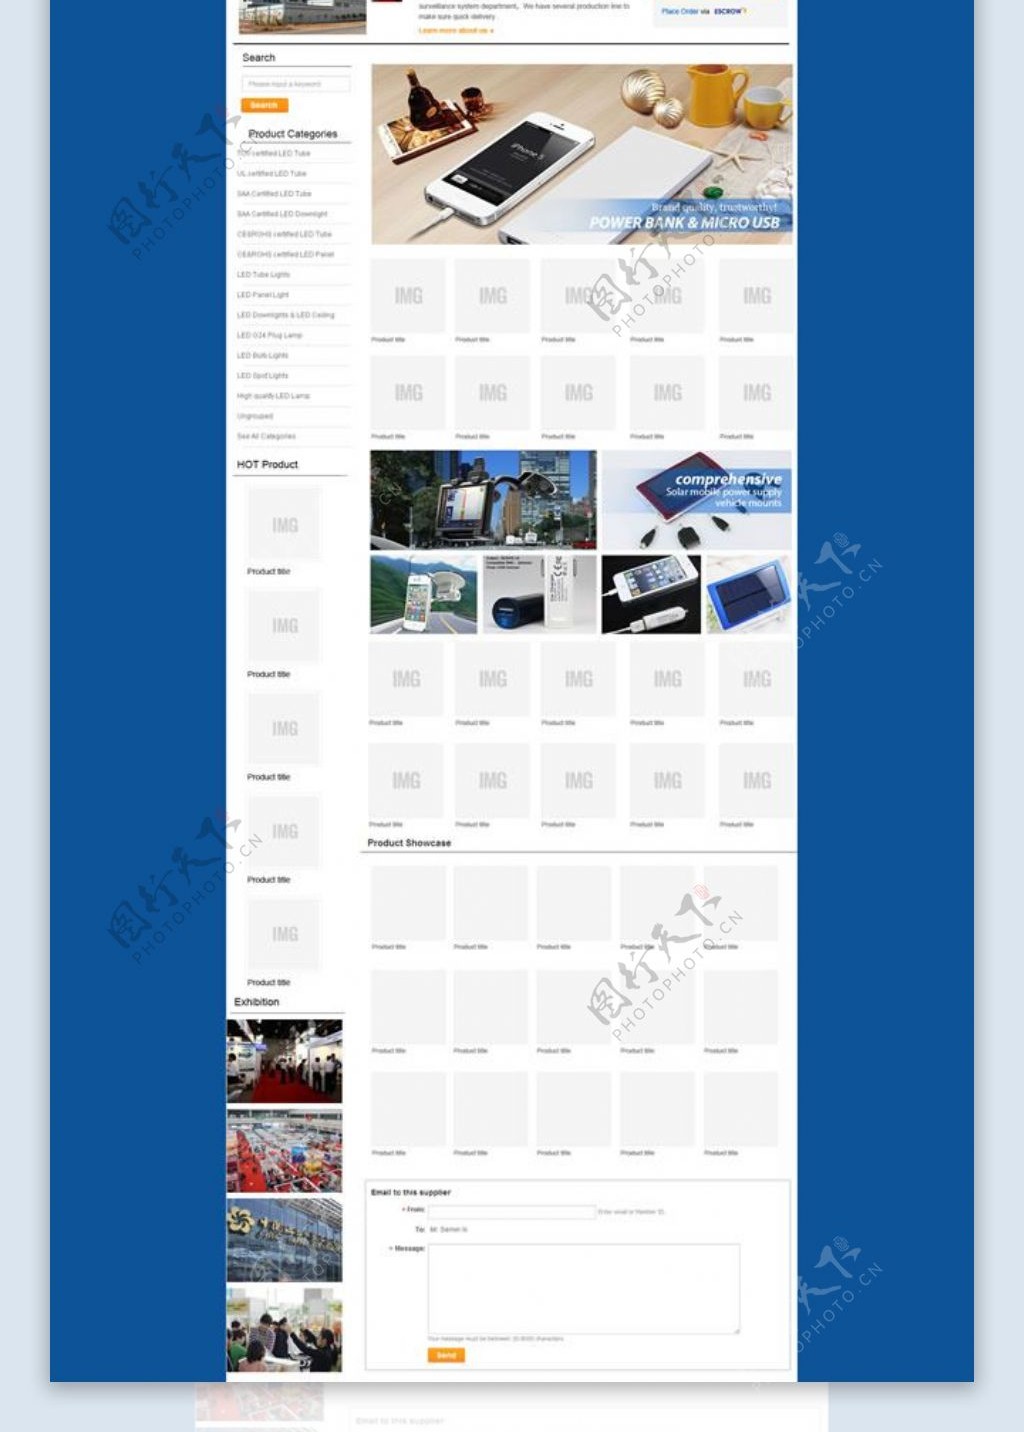 移动电源企业网站模板PSD素材